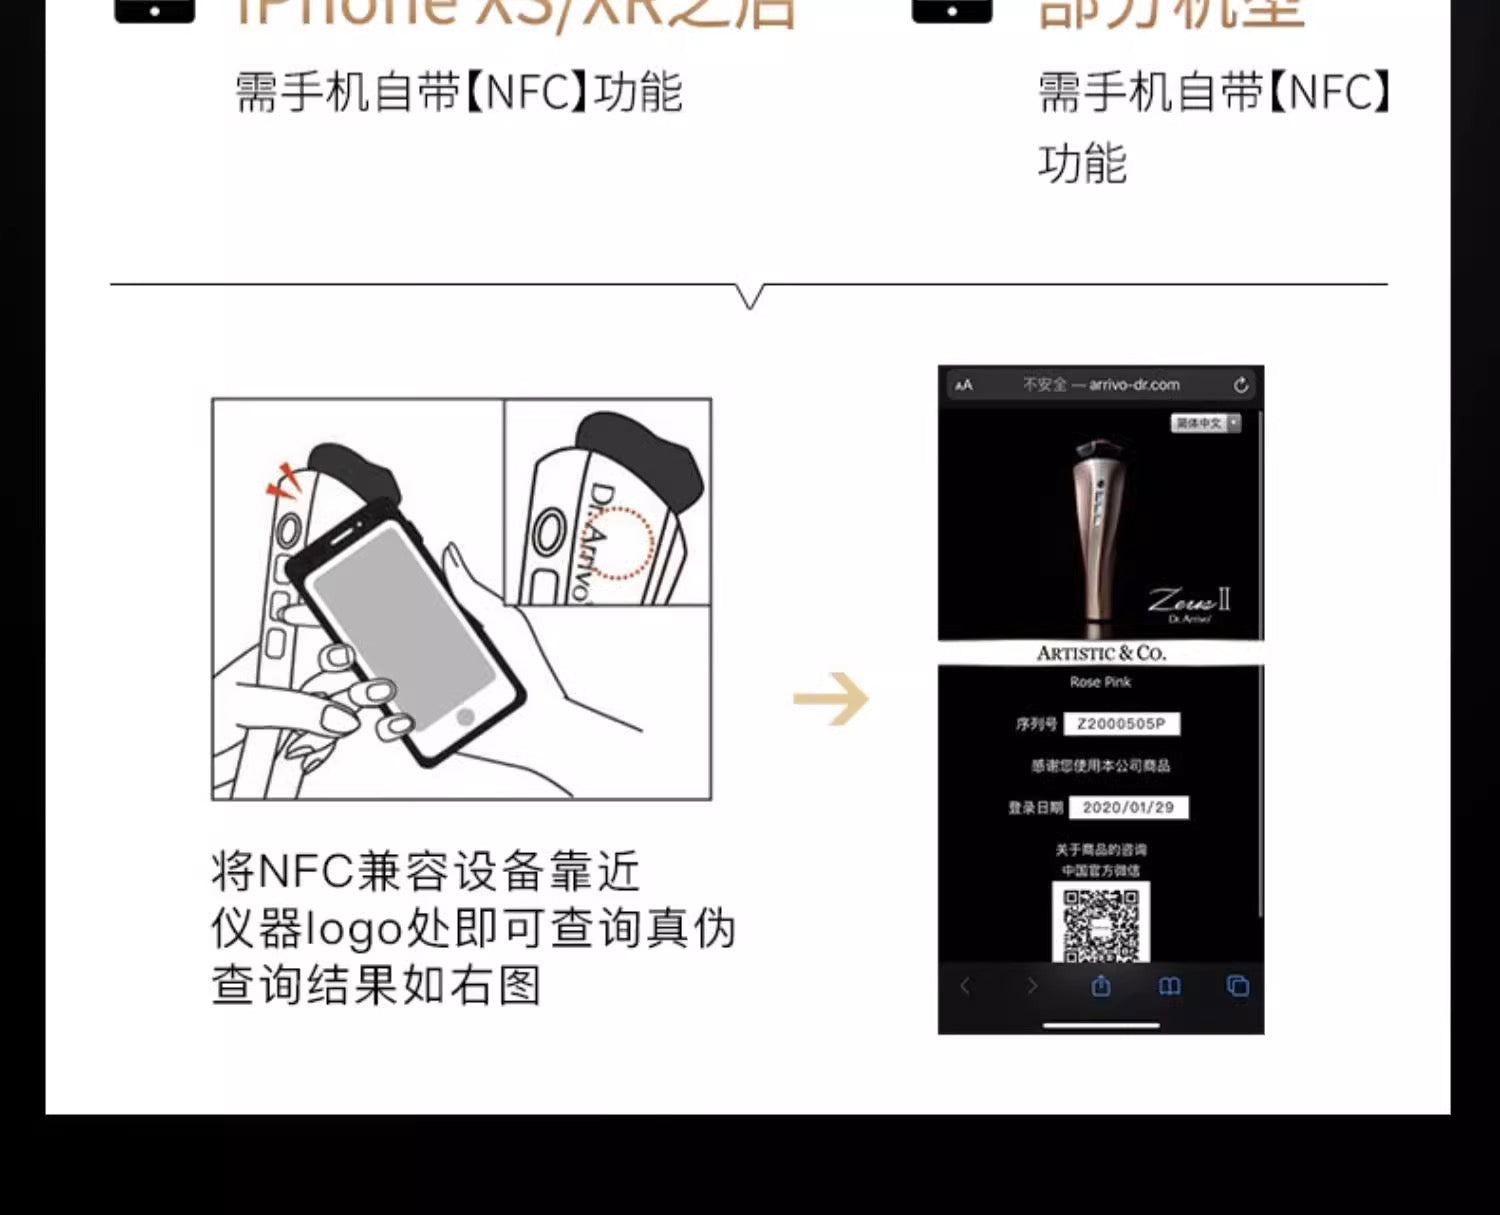 【限时抢购】ARTISTIC&Co. Dr.Arrivo ZeusII 宙斯2代美容仪送价值近7万6千日元赠品